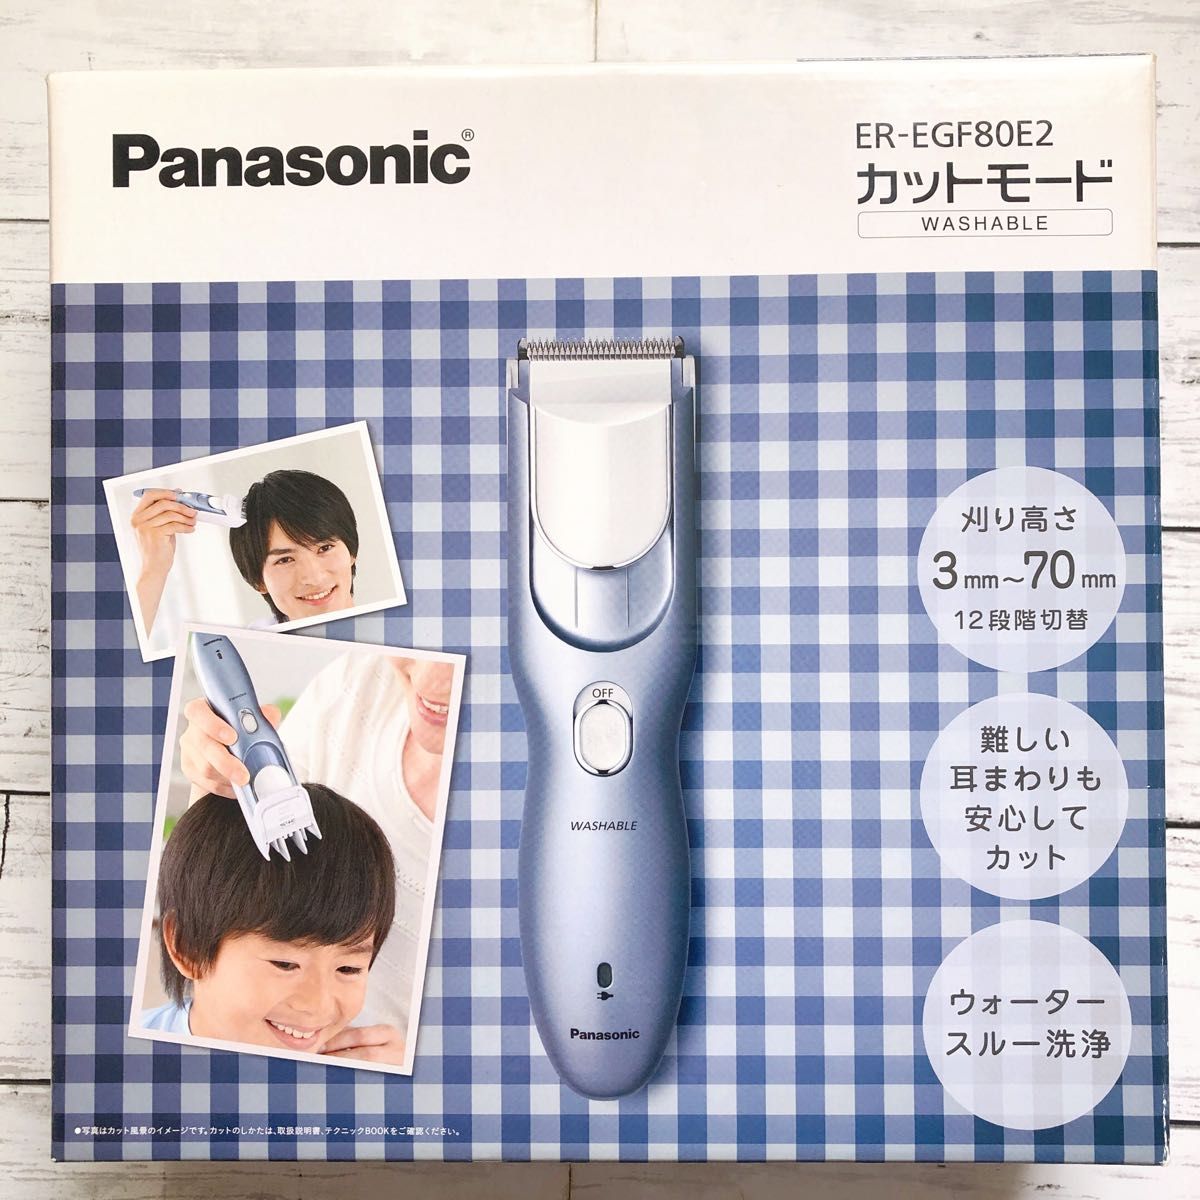 Panasonic カットモード 家庭用バリカン ER-GF80 水洗いOK - 脱毛・除毛